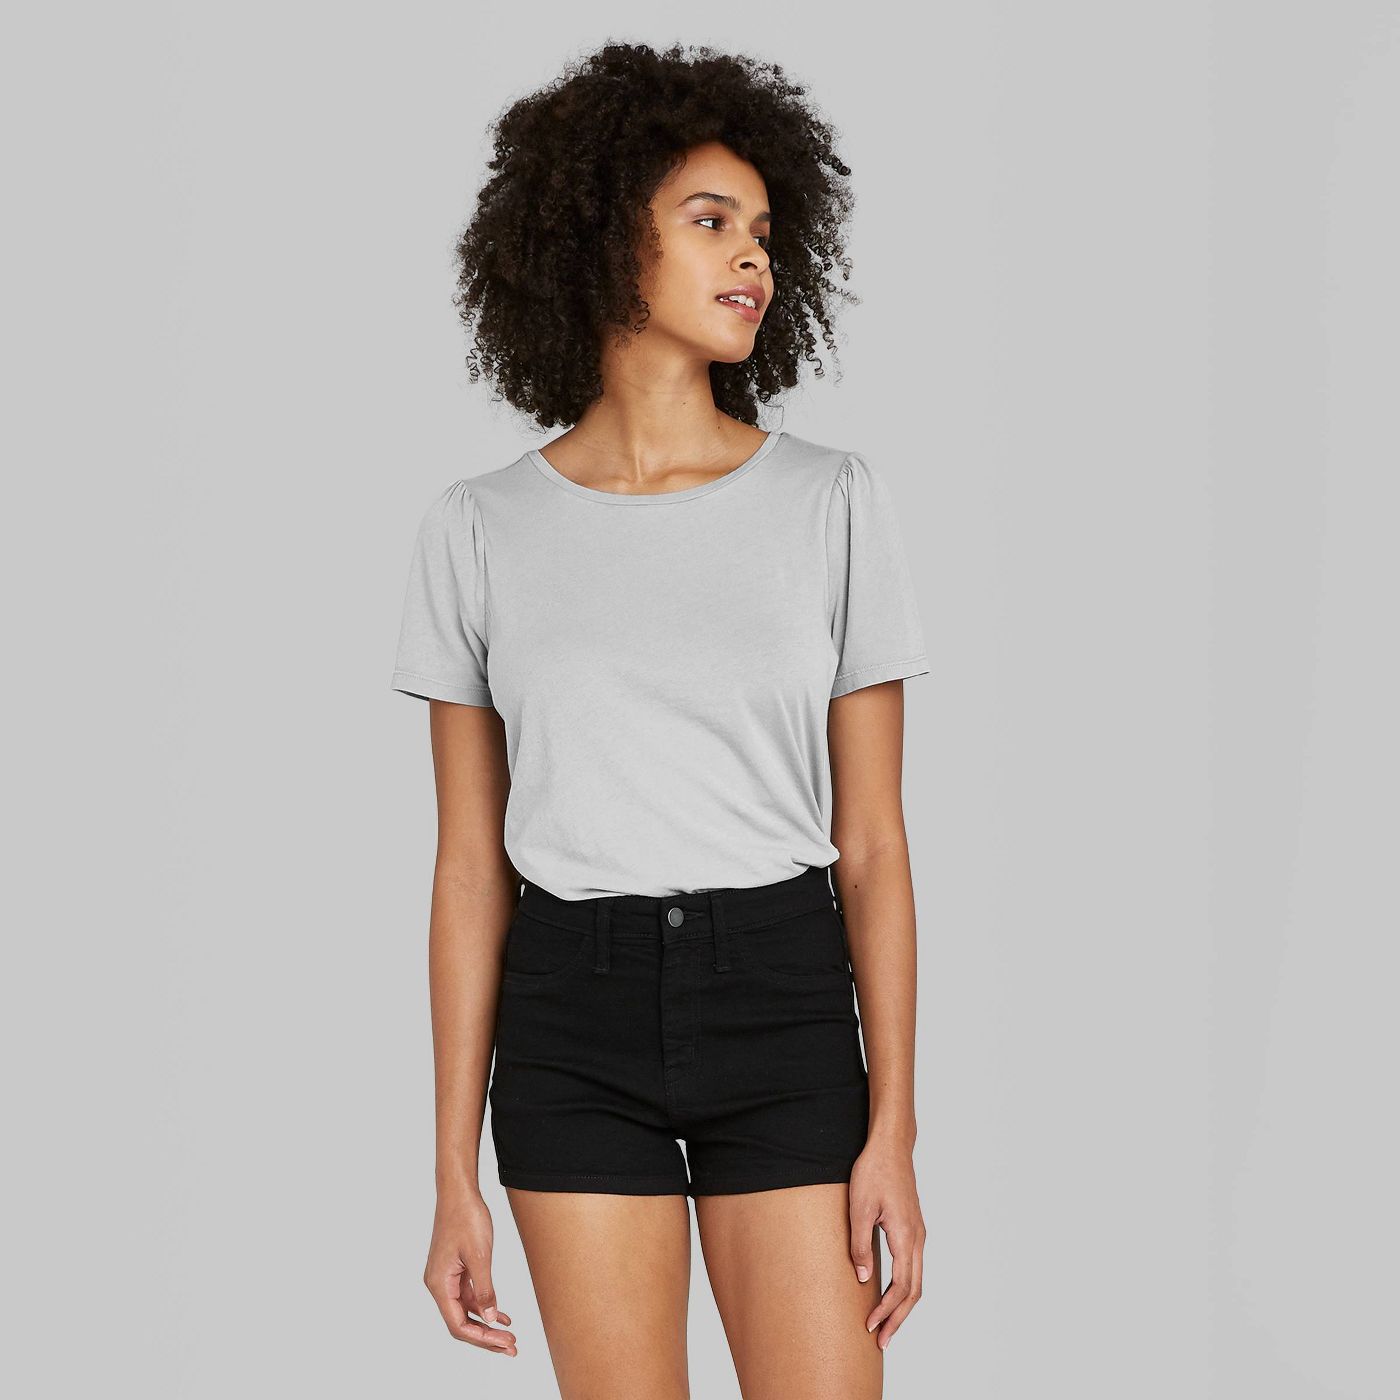 Women's Puff Short Sleeve T-Shirt - Wild Fableâ„¢ - image 2 of 8